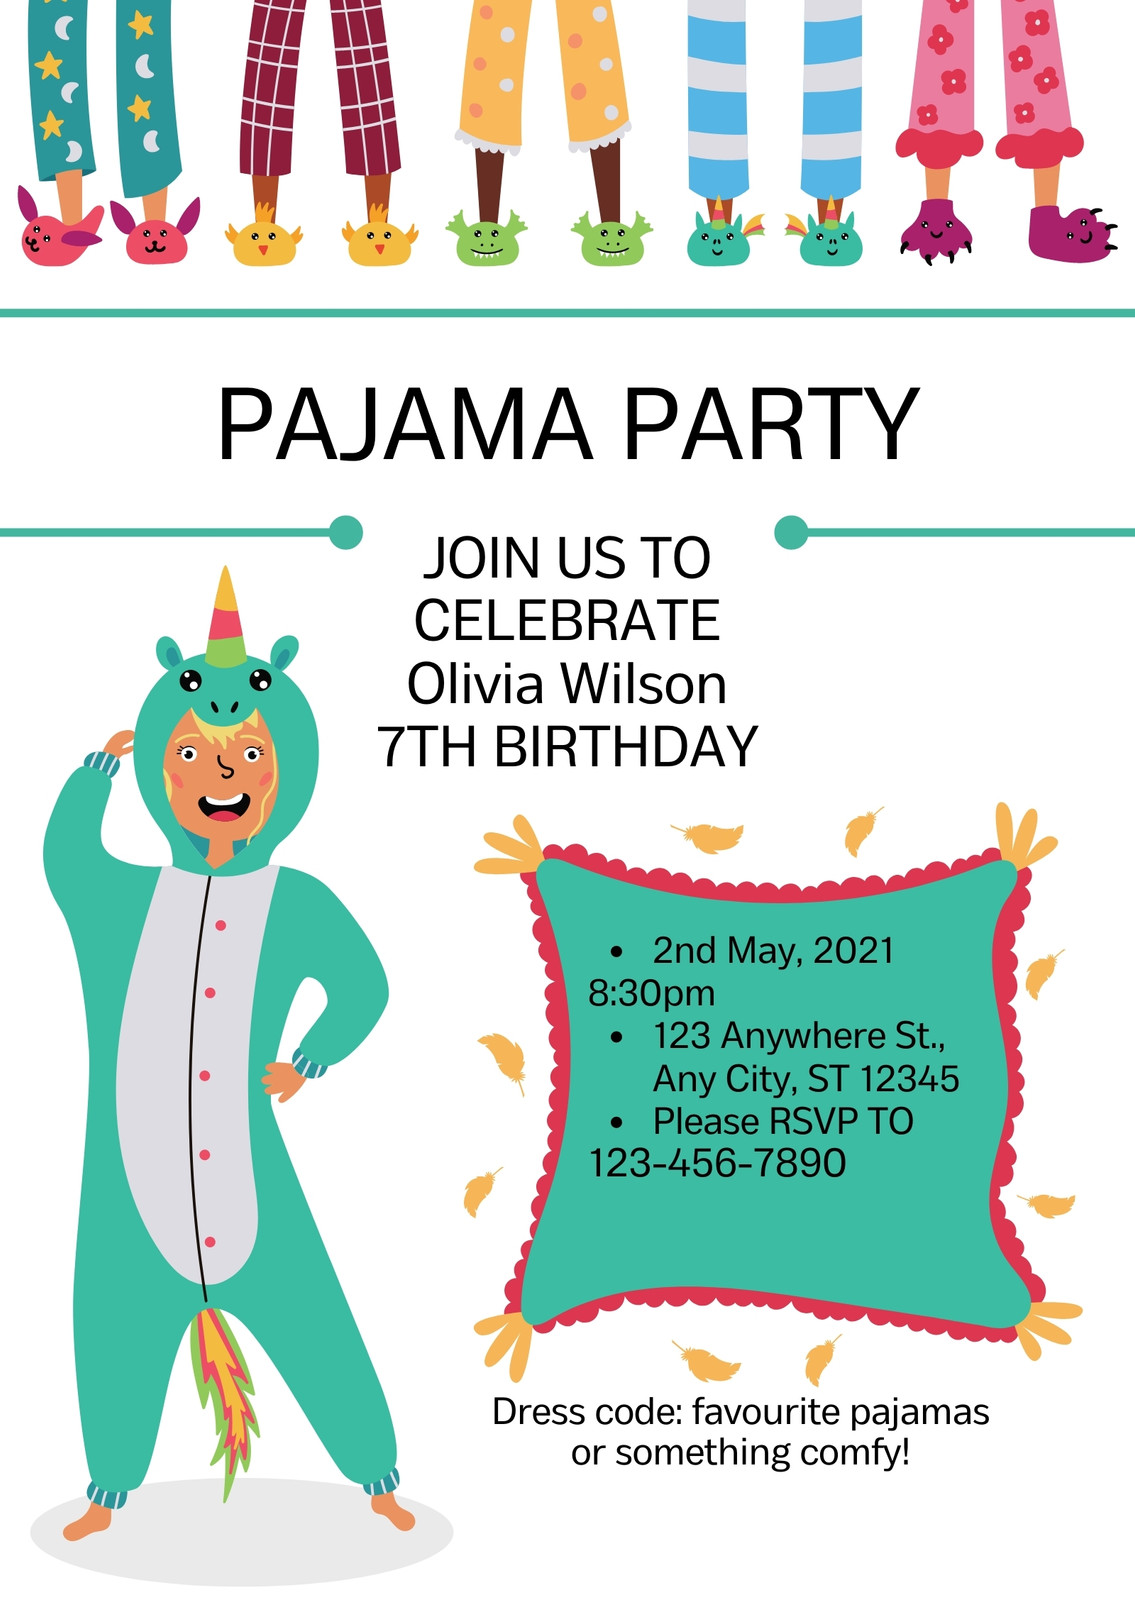 8 Pyjama Party ideas  pajama party, pajama party outfit ideas, pajama party  outfit